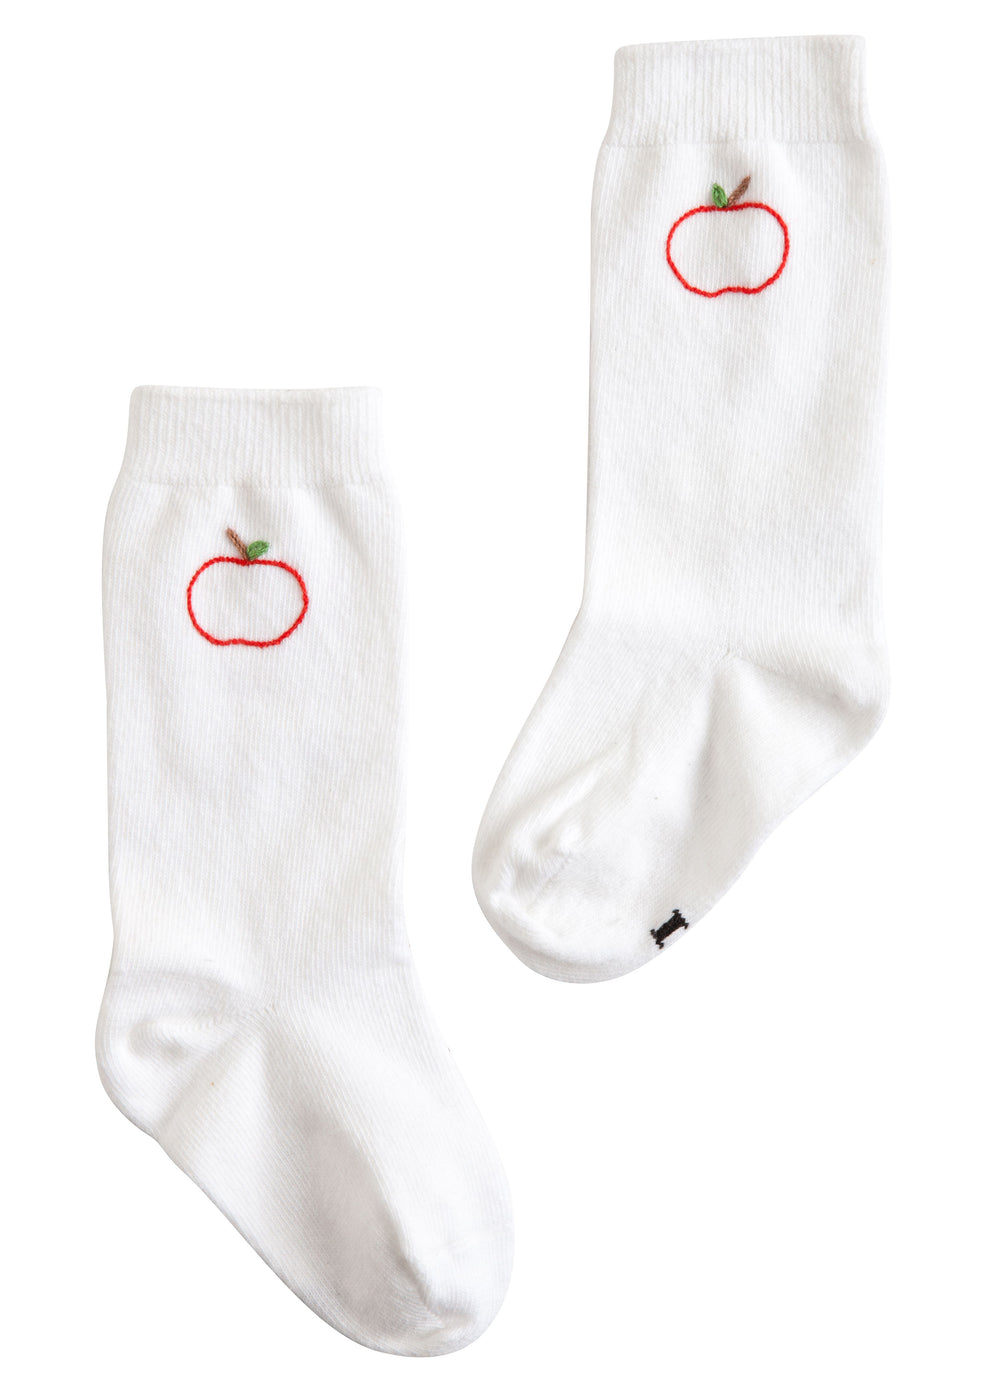 Knee High Socks - Apple